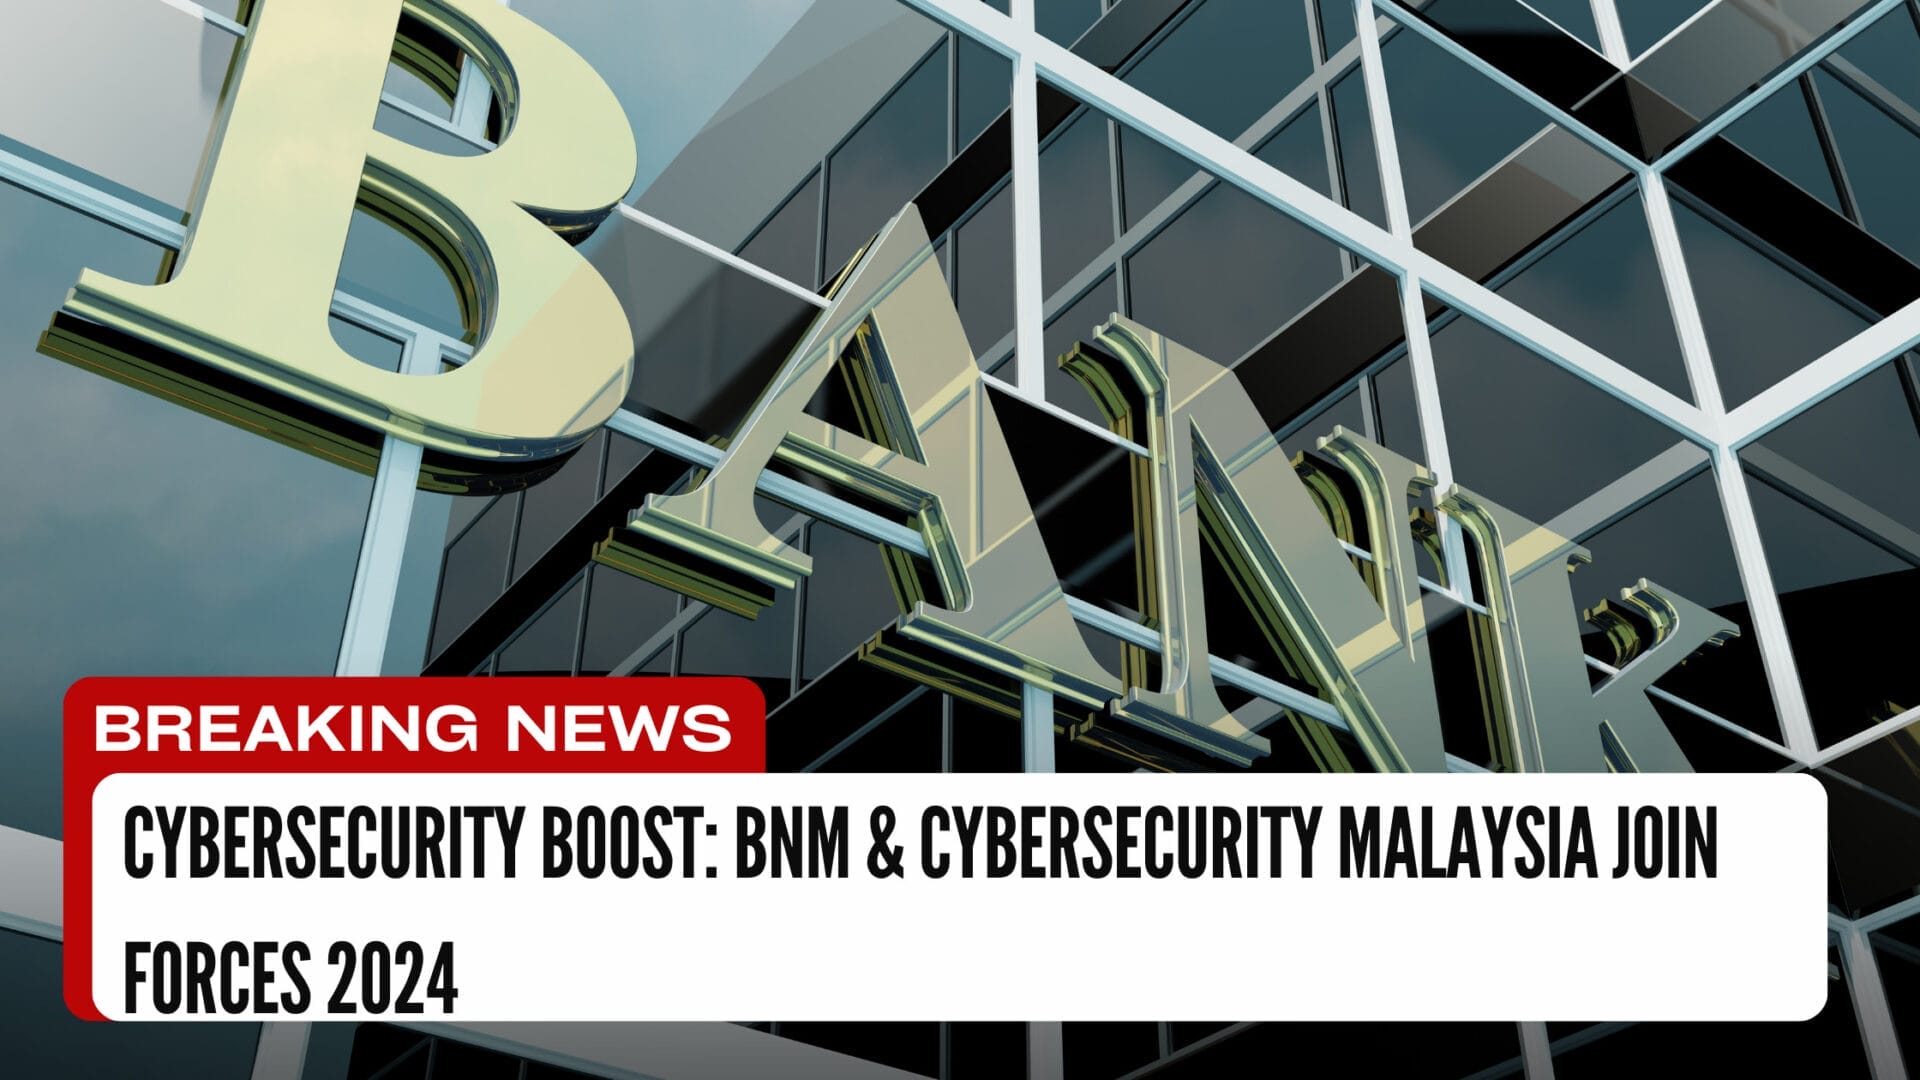 BNM & CyberSecurity Malaysia